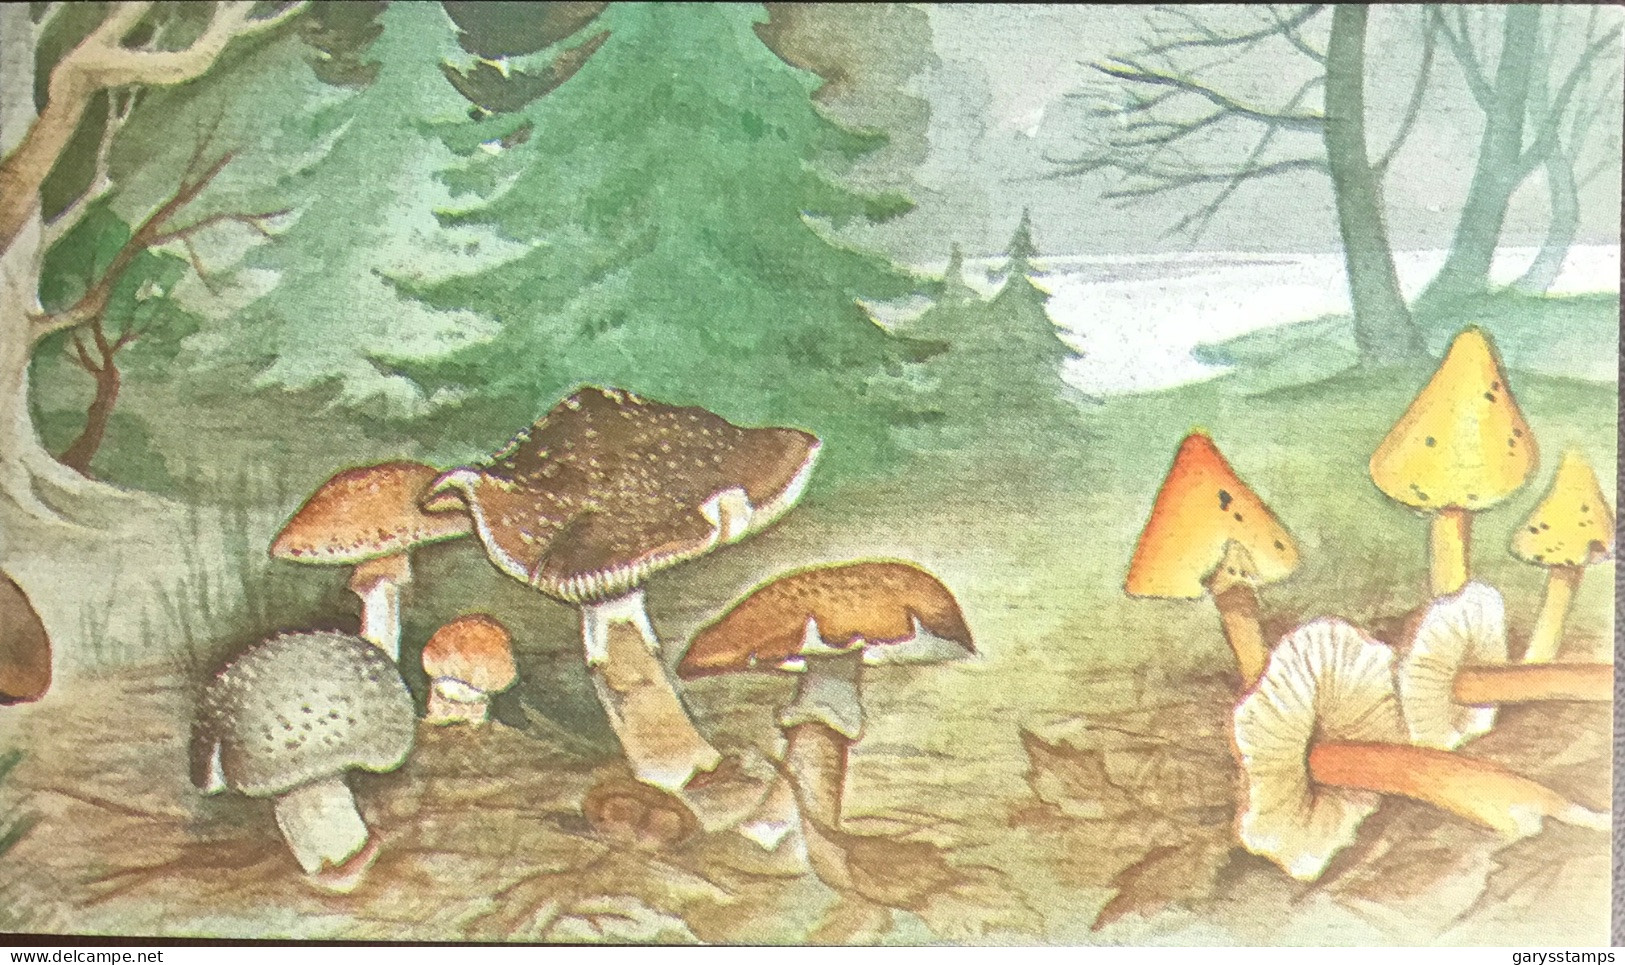 Belgium 1991 Mushrooms Booklet Unused - Funghi